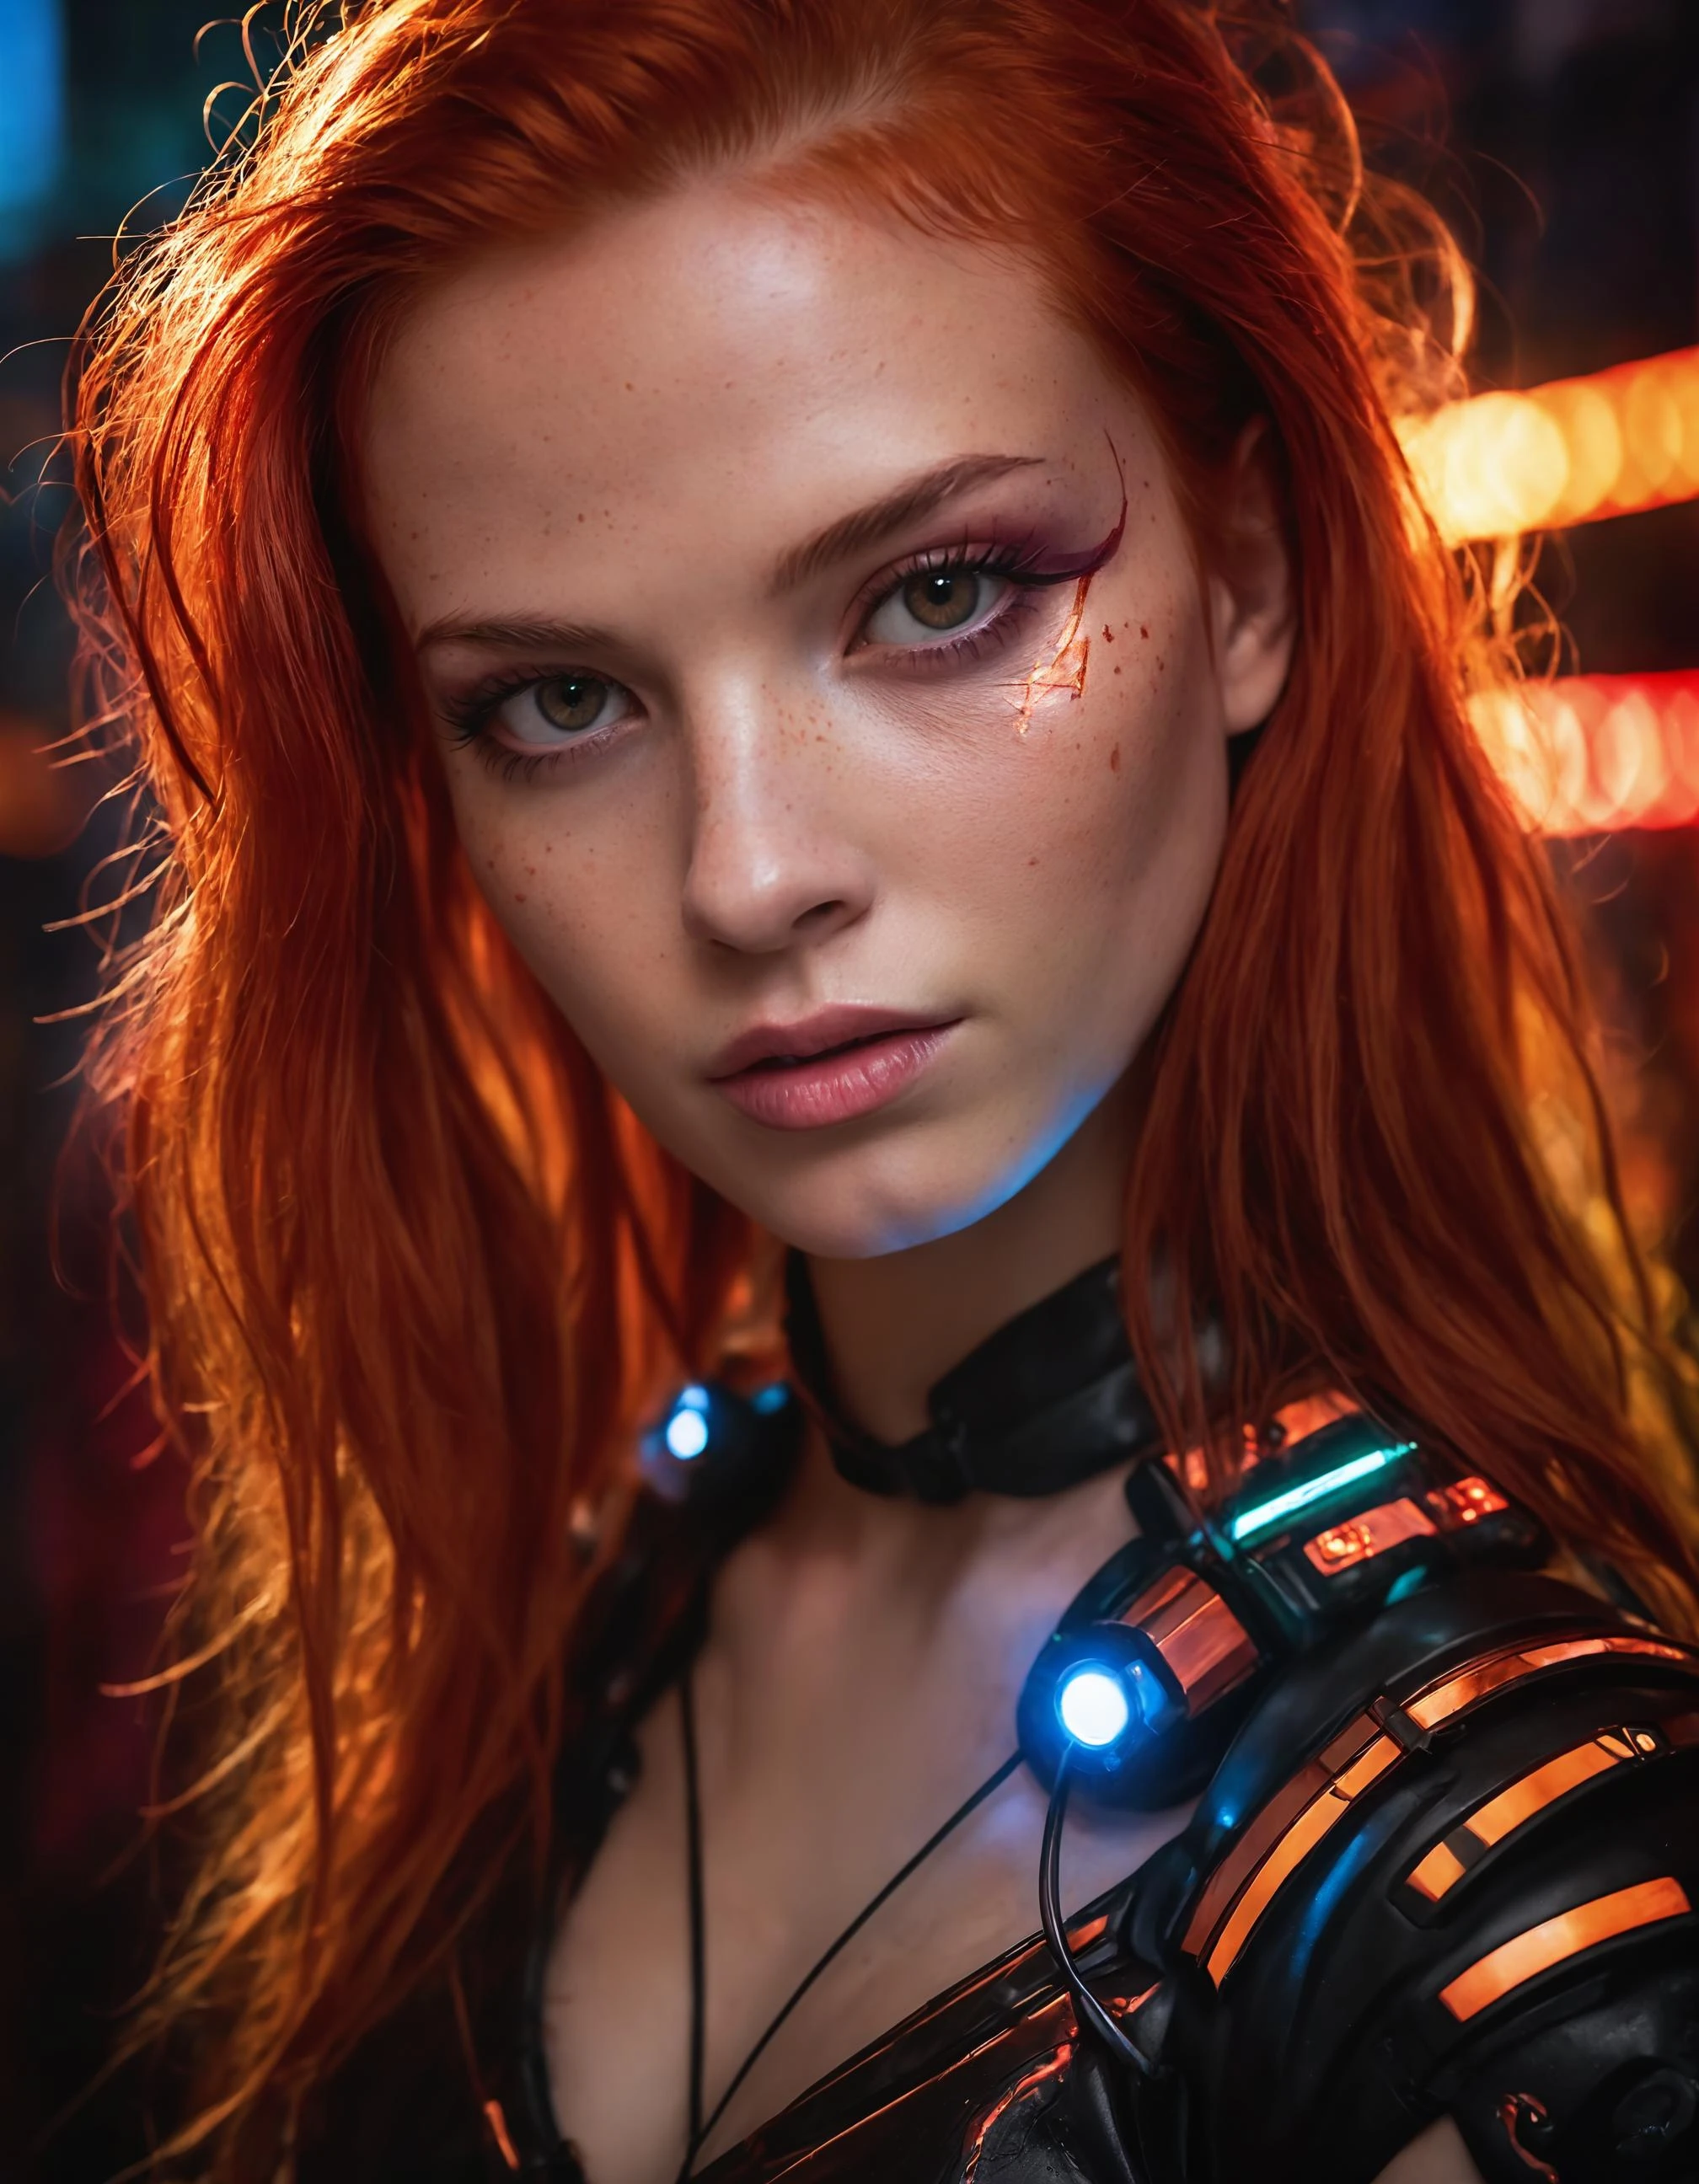 一张照片捕捉了一位有着火红头发的年轻机器人女性的本质. 她的脸占据了整个画面, 沐浴在霓虹色彩中, 在未来主义的背景中散发出决心和神秘感., 不明确的